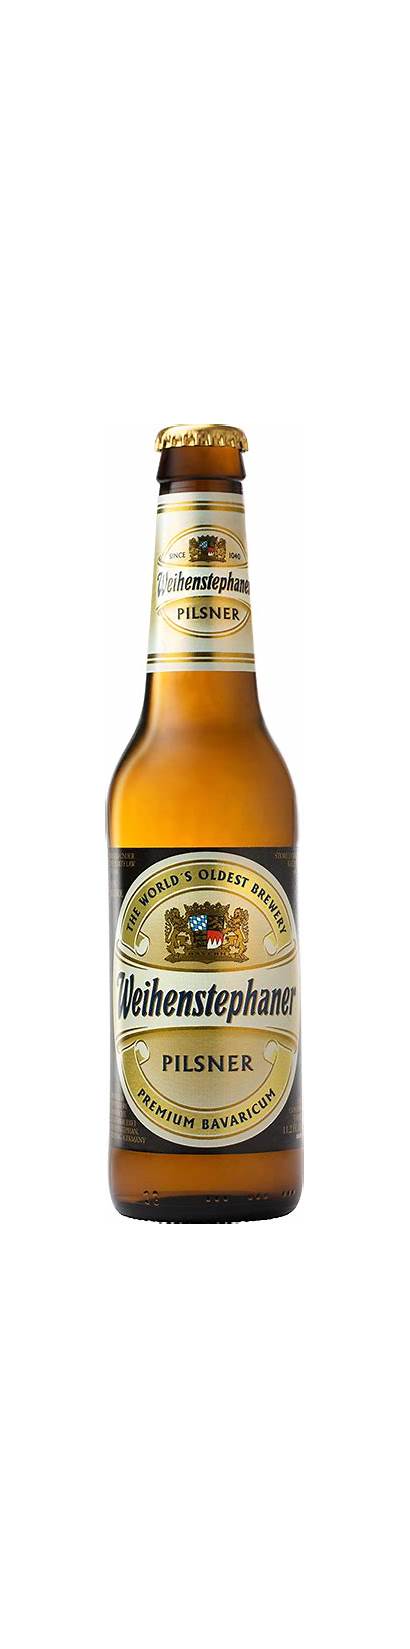 Weihenstephan Pilsner Beer Brewery Lager Weissbier Hefe